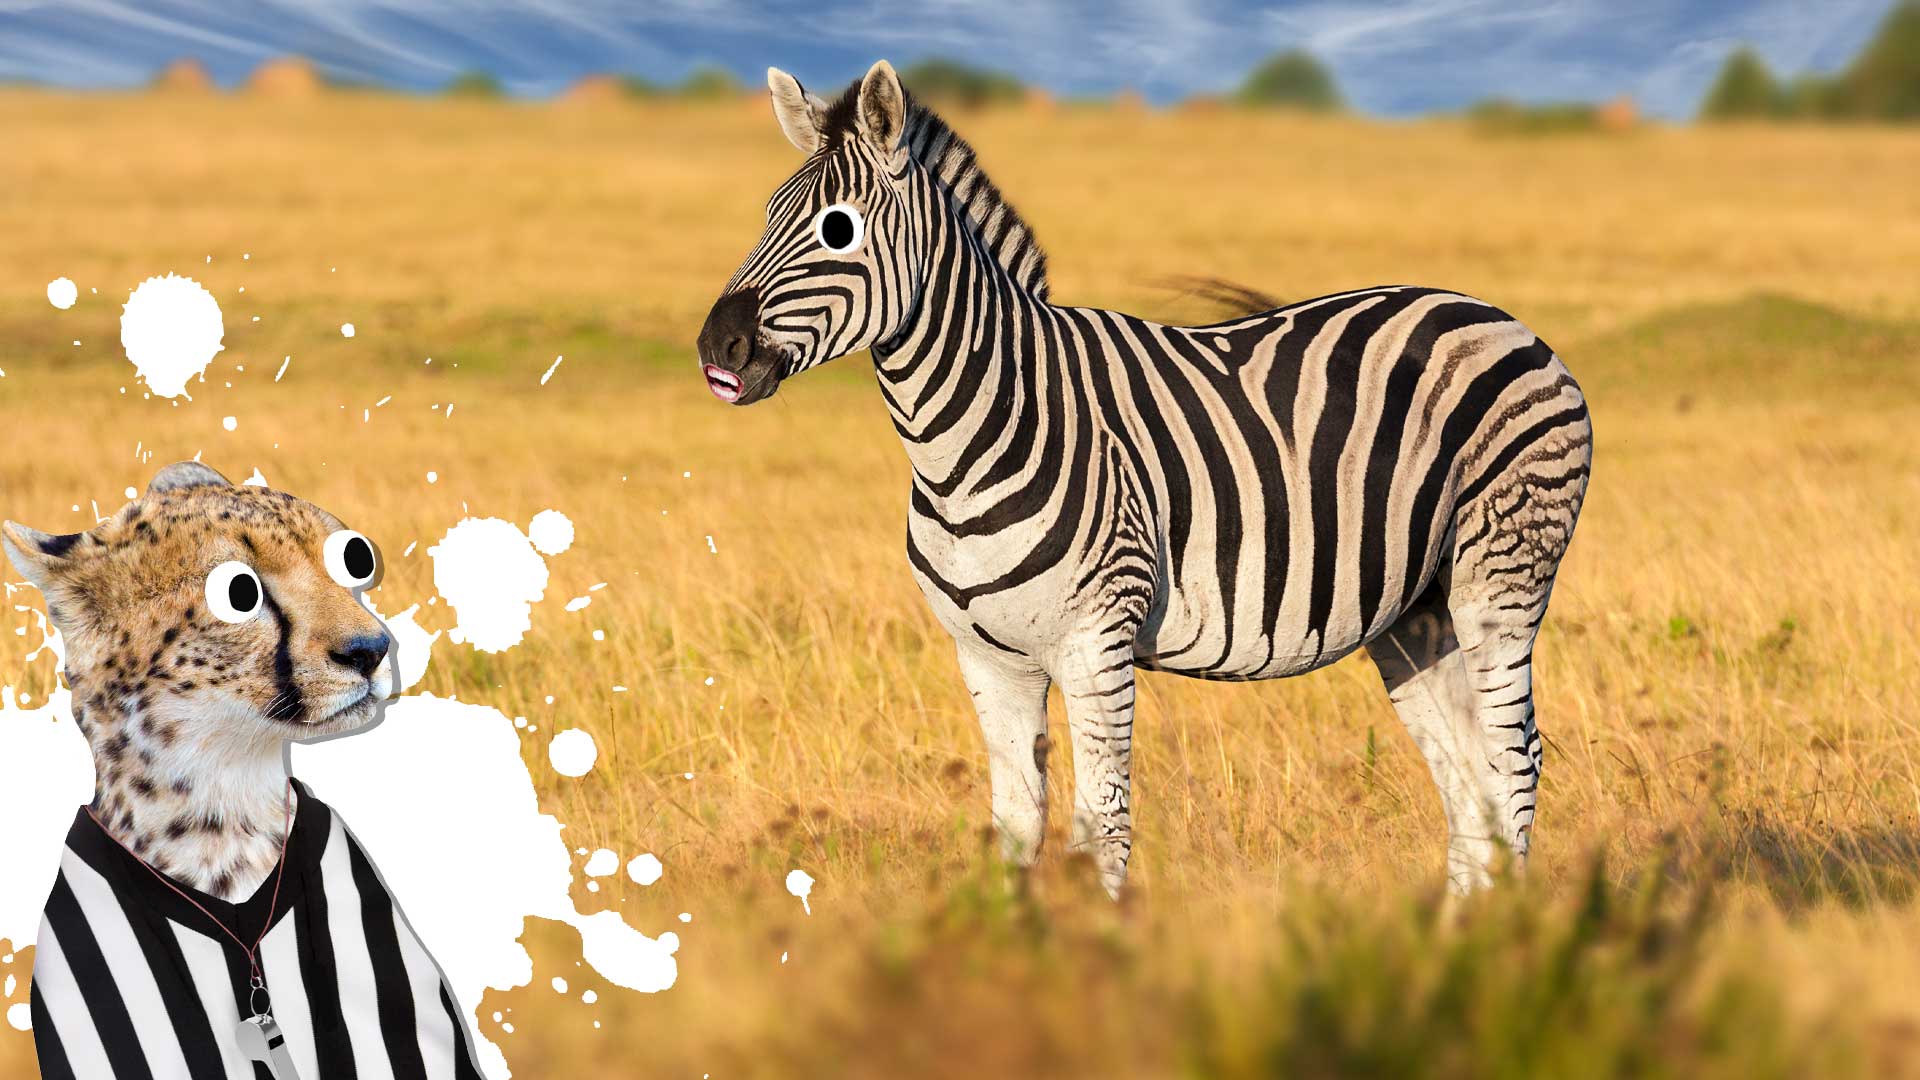 A zebra and a big cat in a big grassy field